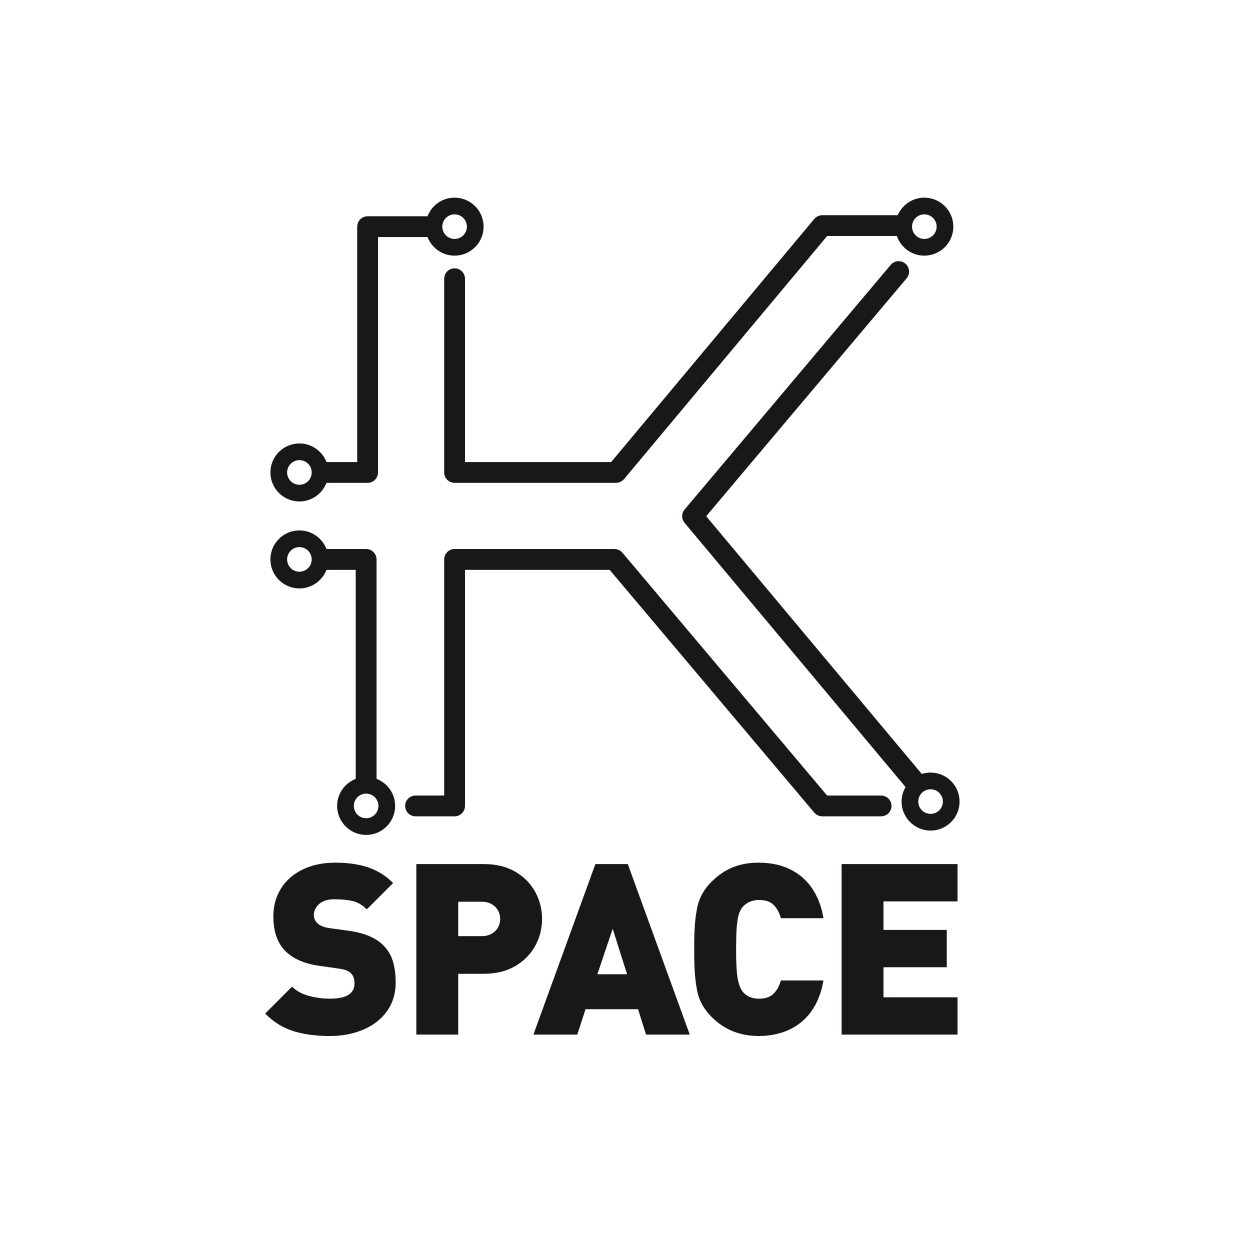 K-space logotype black.png